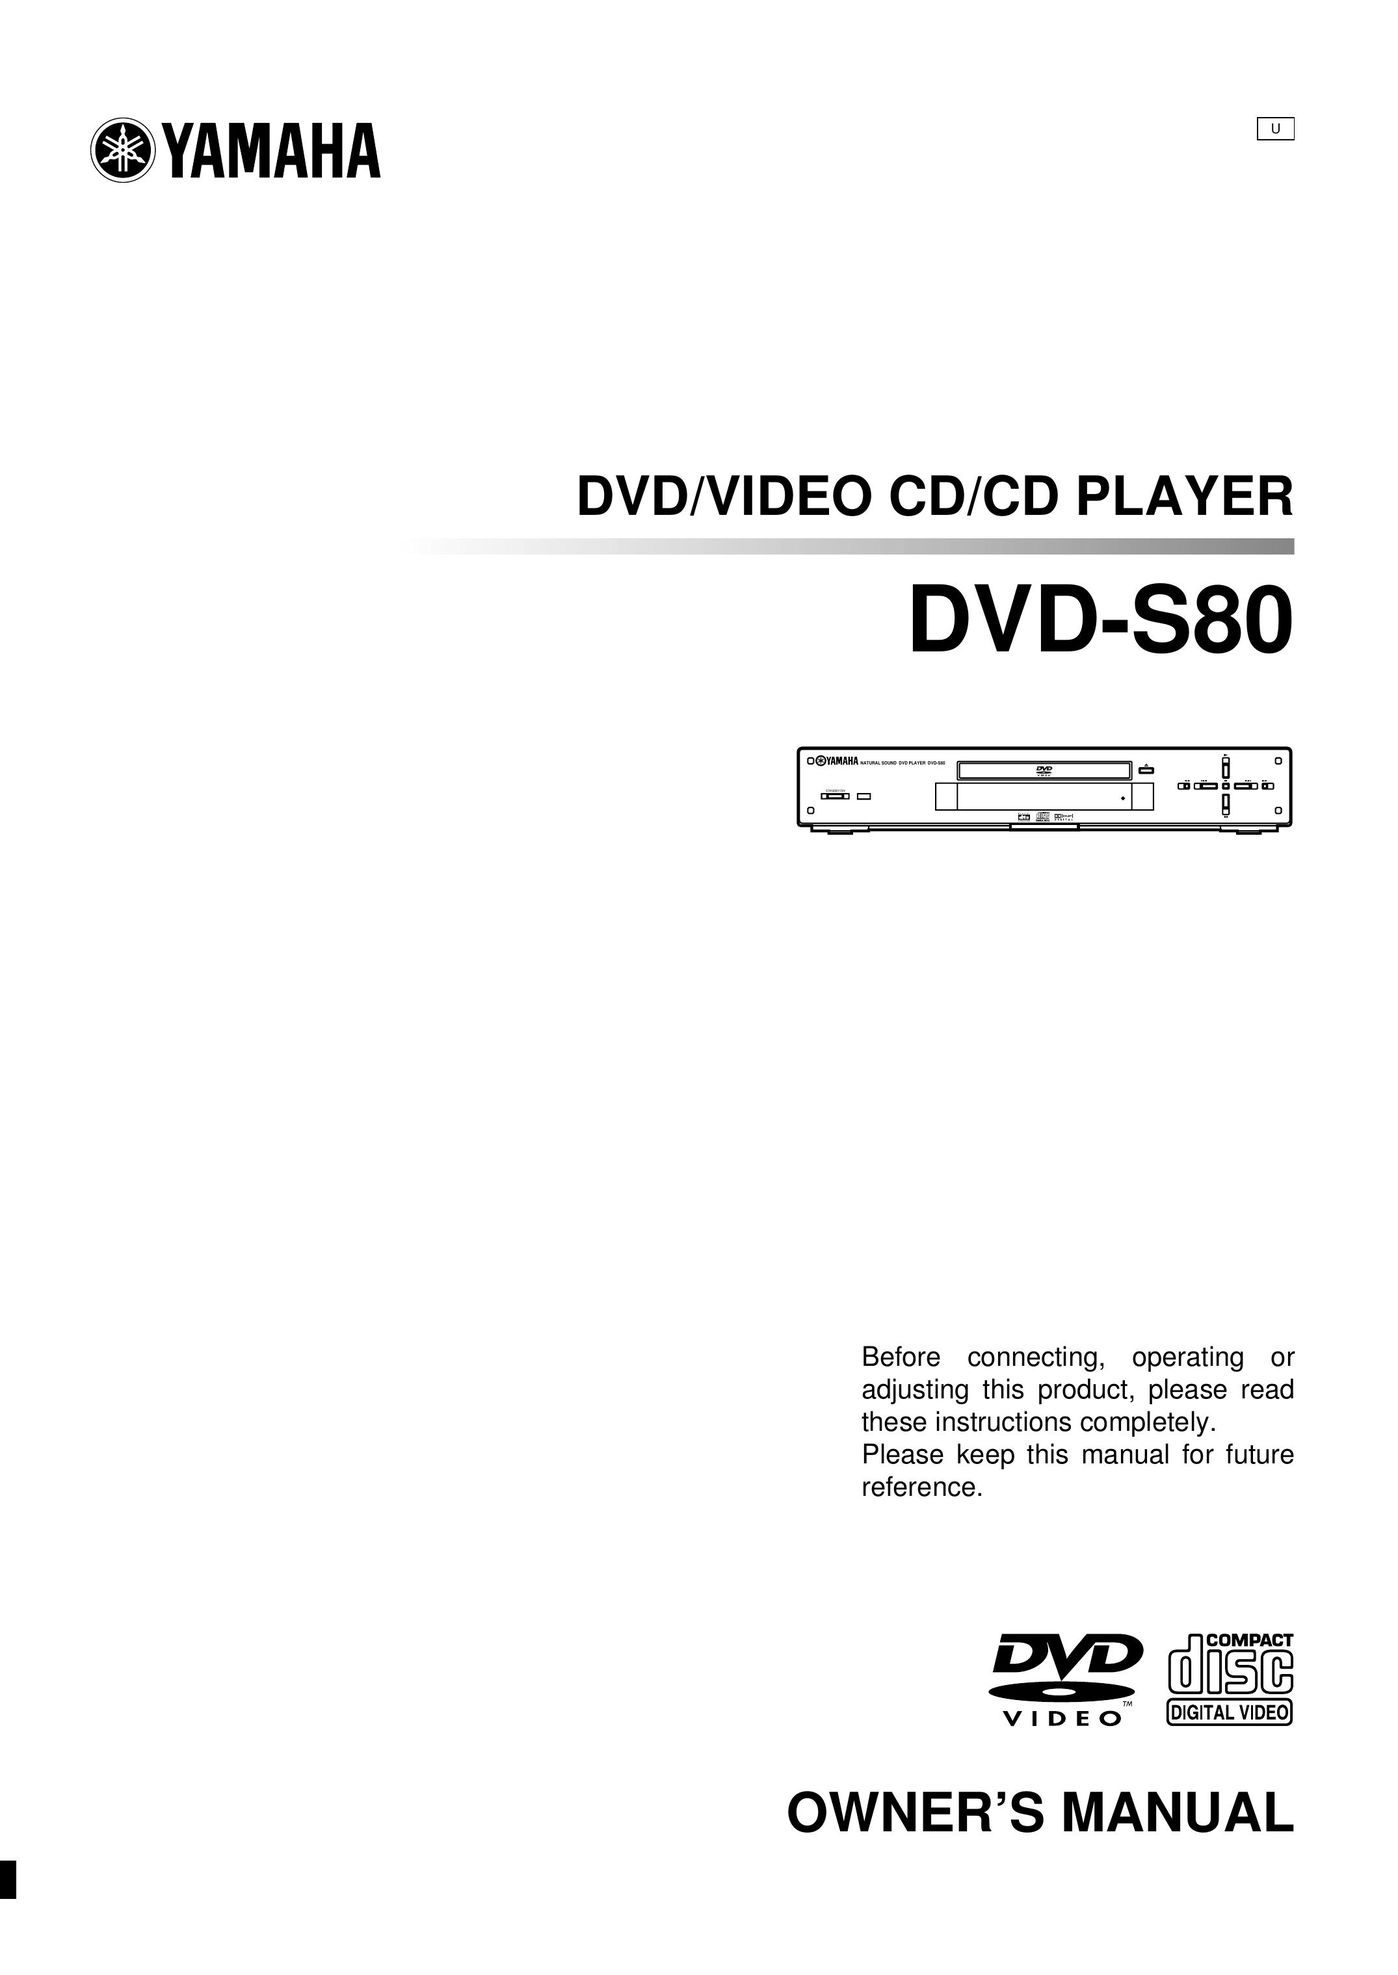 Yamaha DVD-S80 DVD Player User Manual